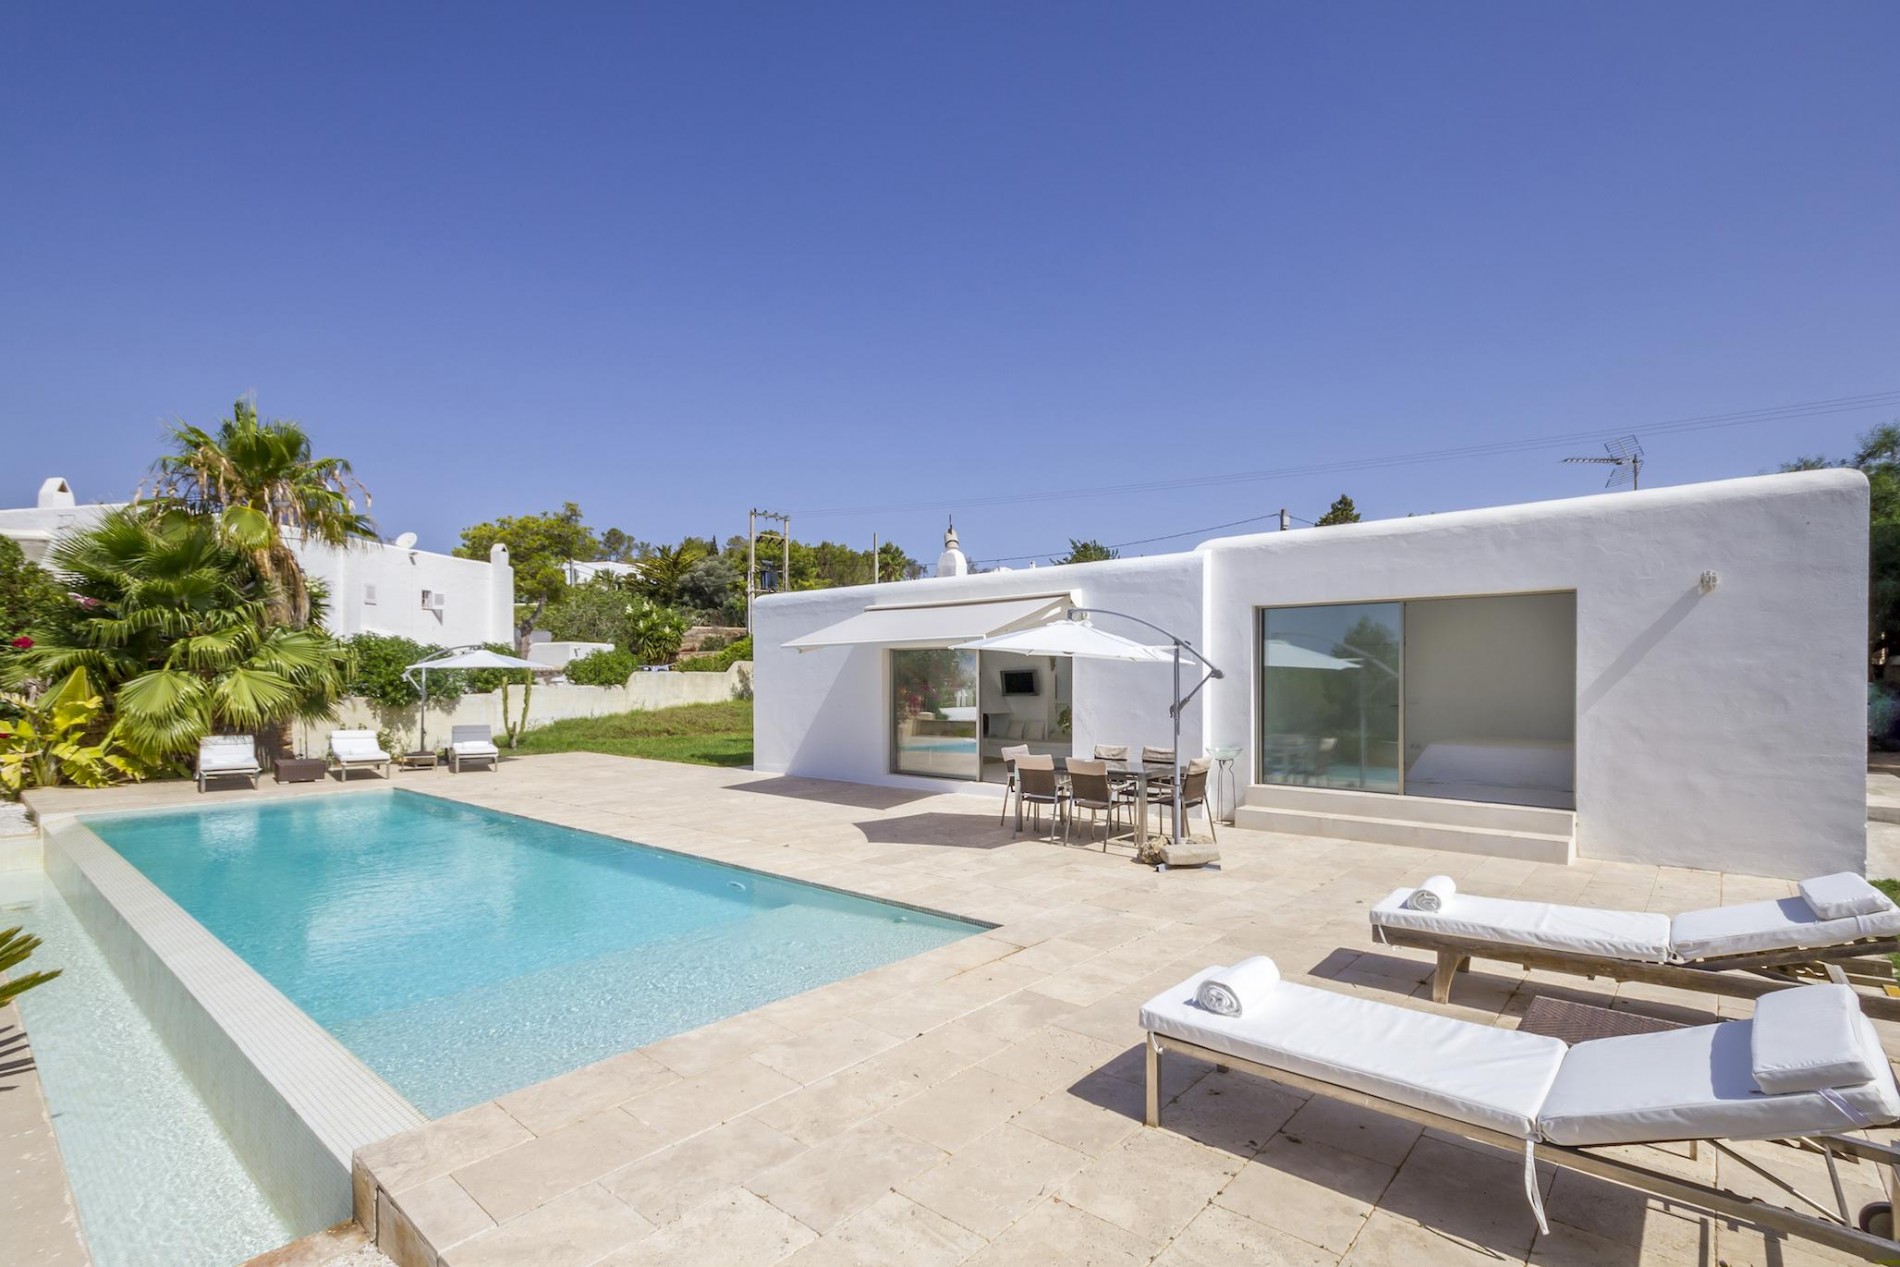 Casa Flor | Pool Villas in Ibiza | Exceptional Villas